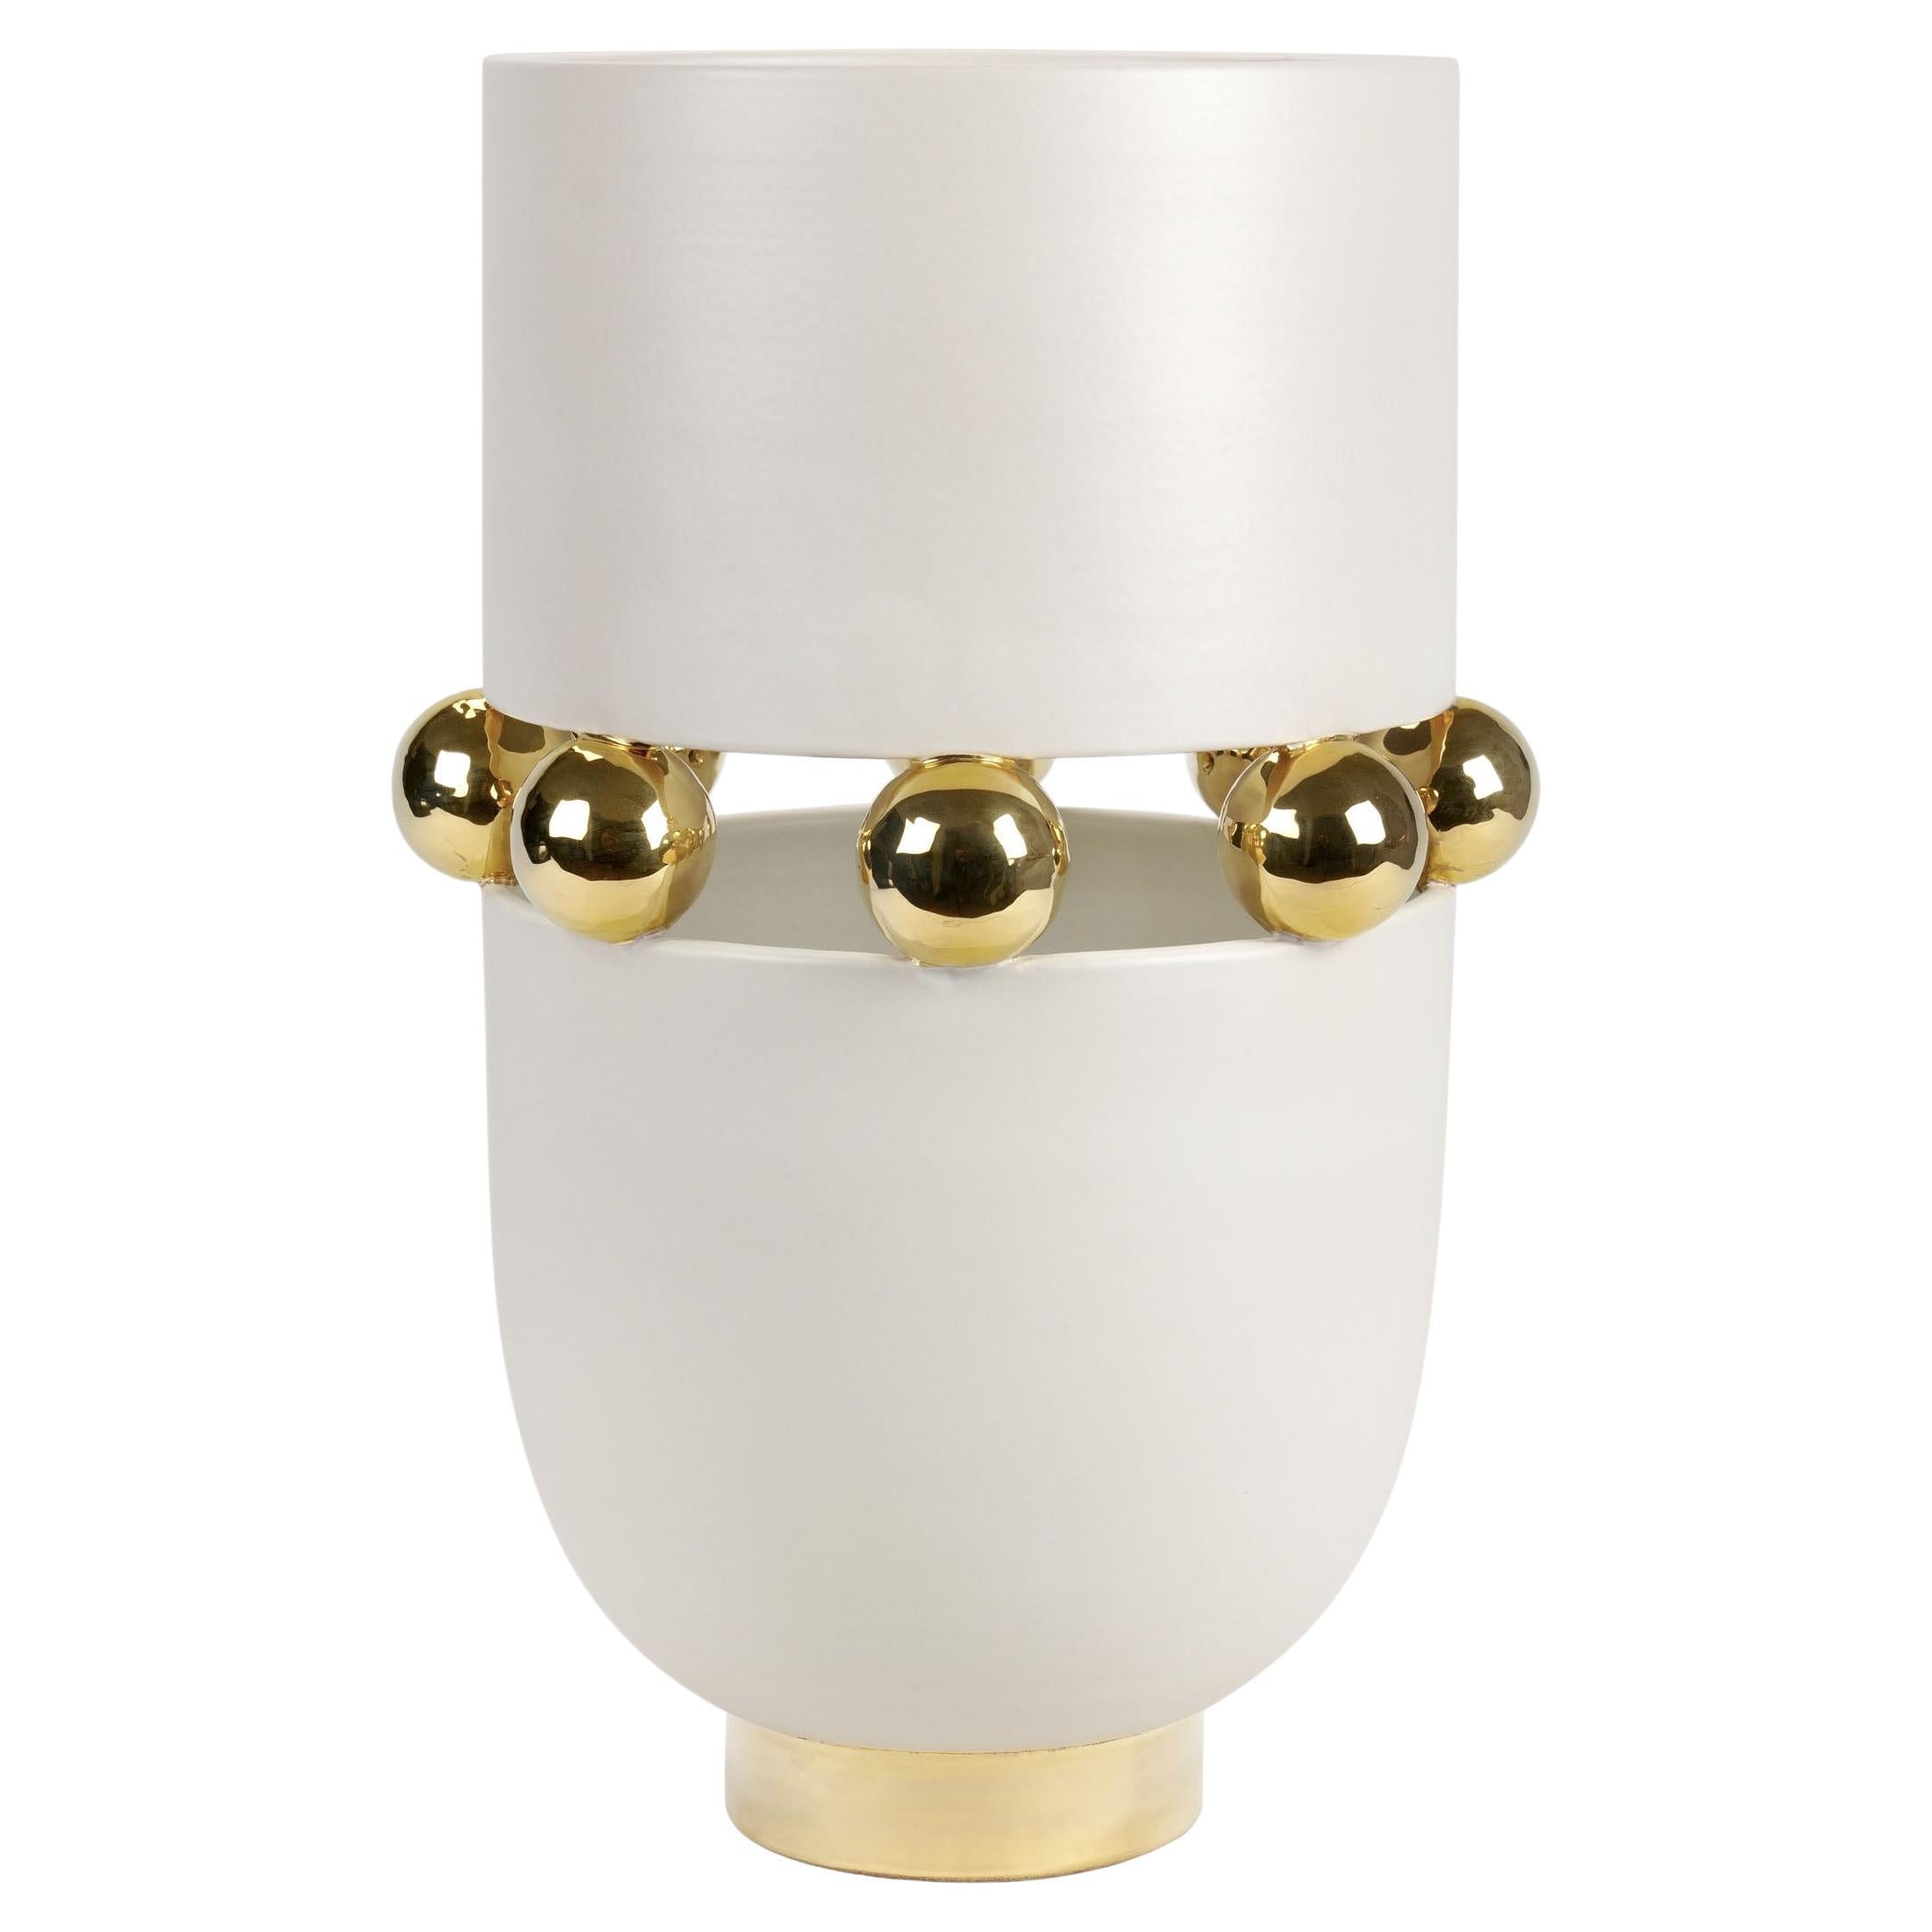 Modern Vase, Matte Finish Warm White, Spheres 24kt Gold Luster, Handmade Italy